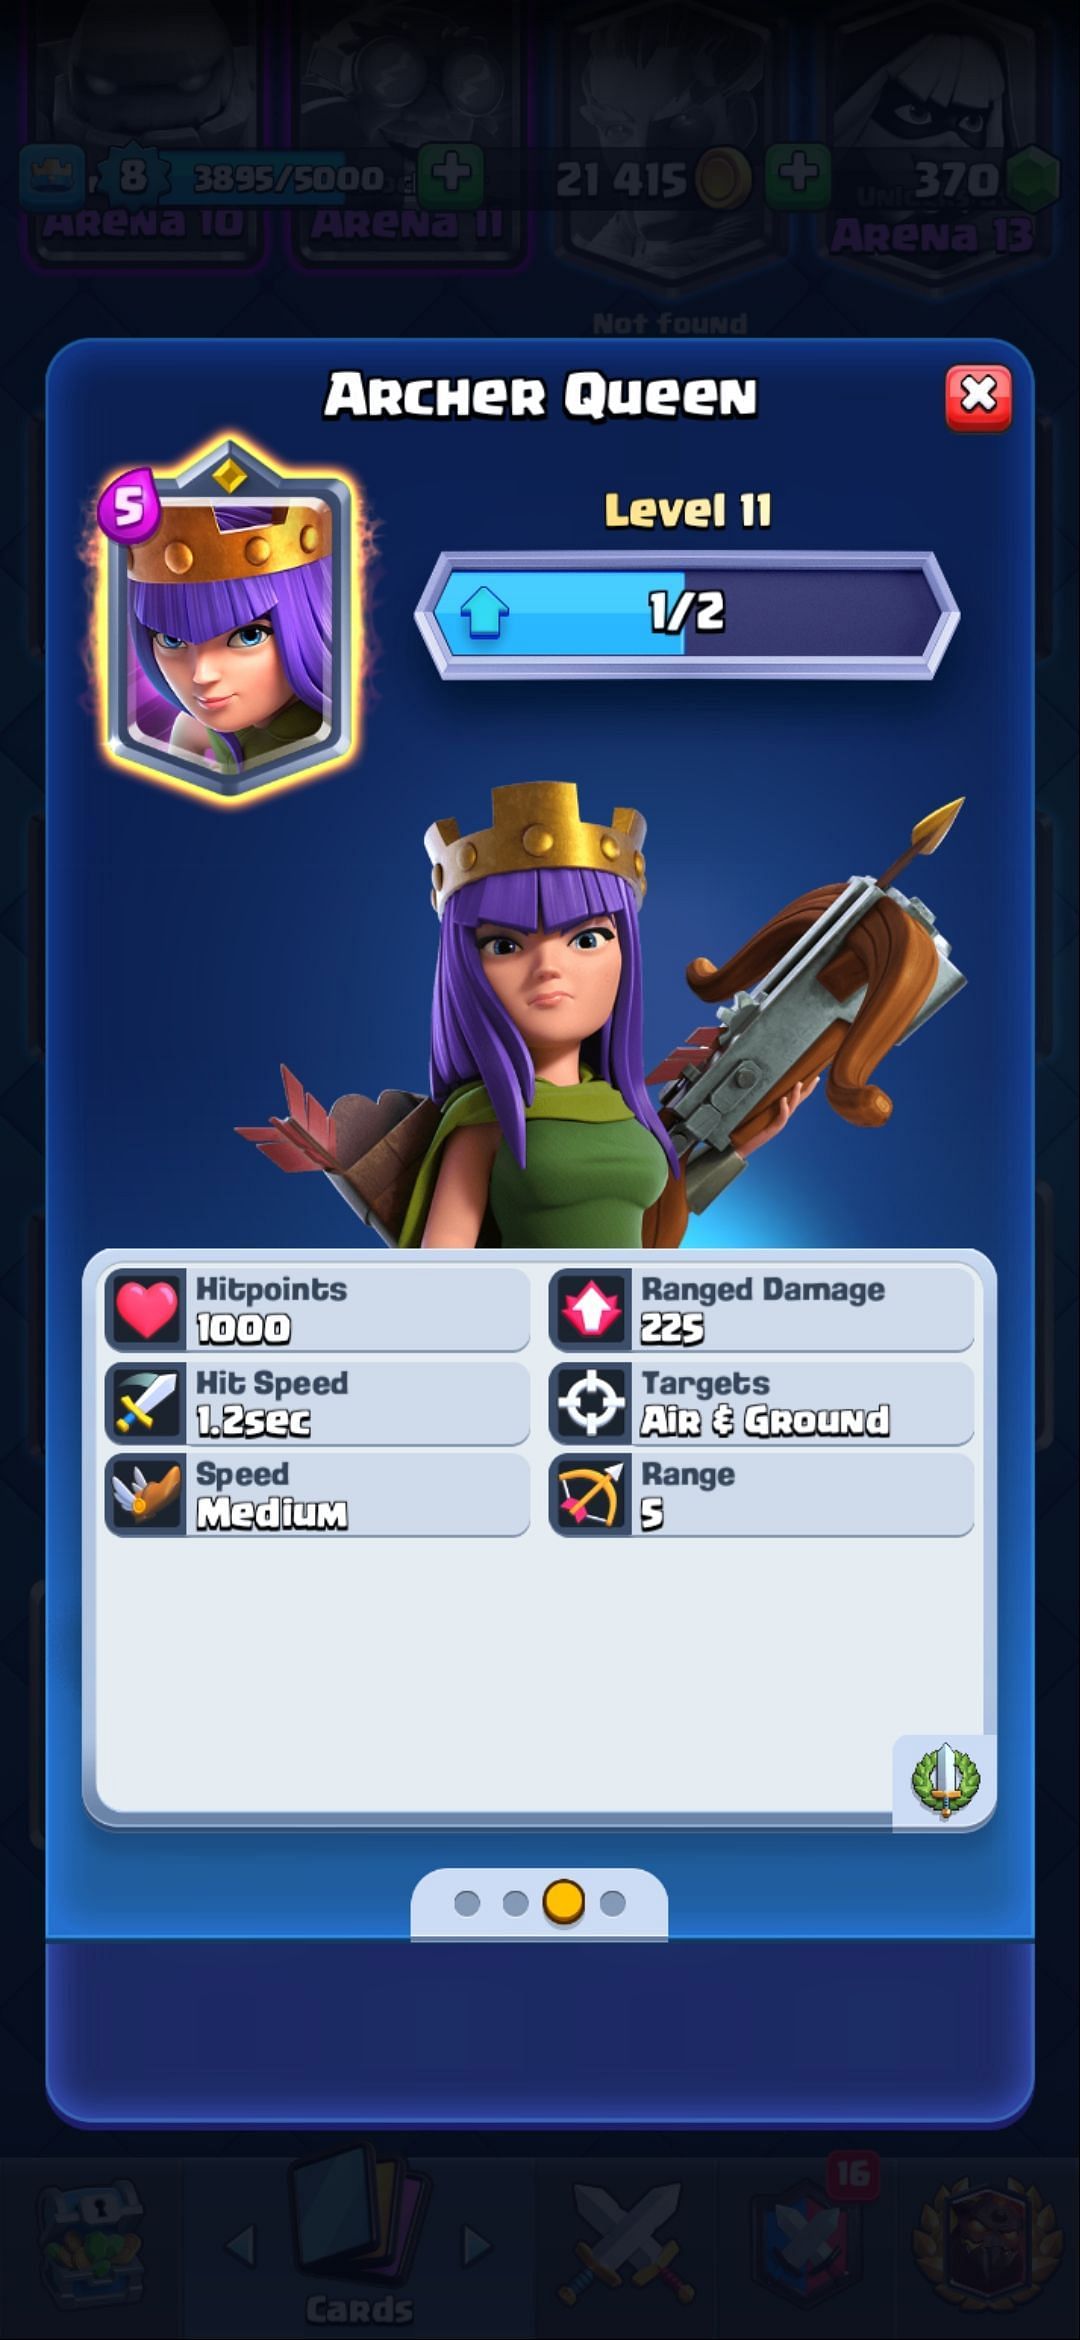 The Archer Queen card in Clash Royale (Image via Sportskeeda)